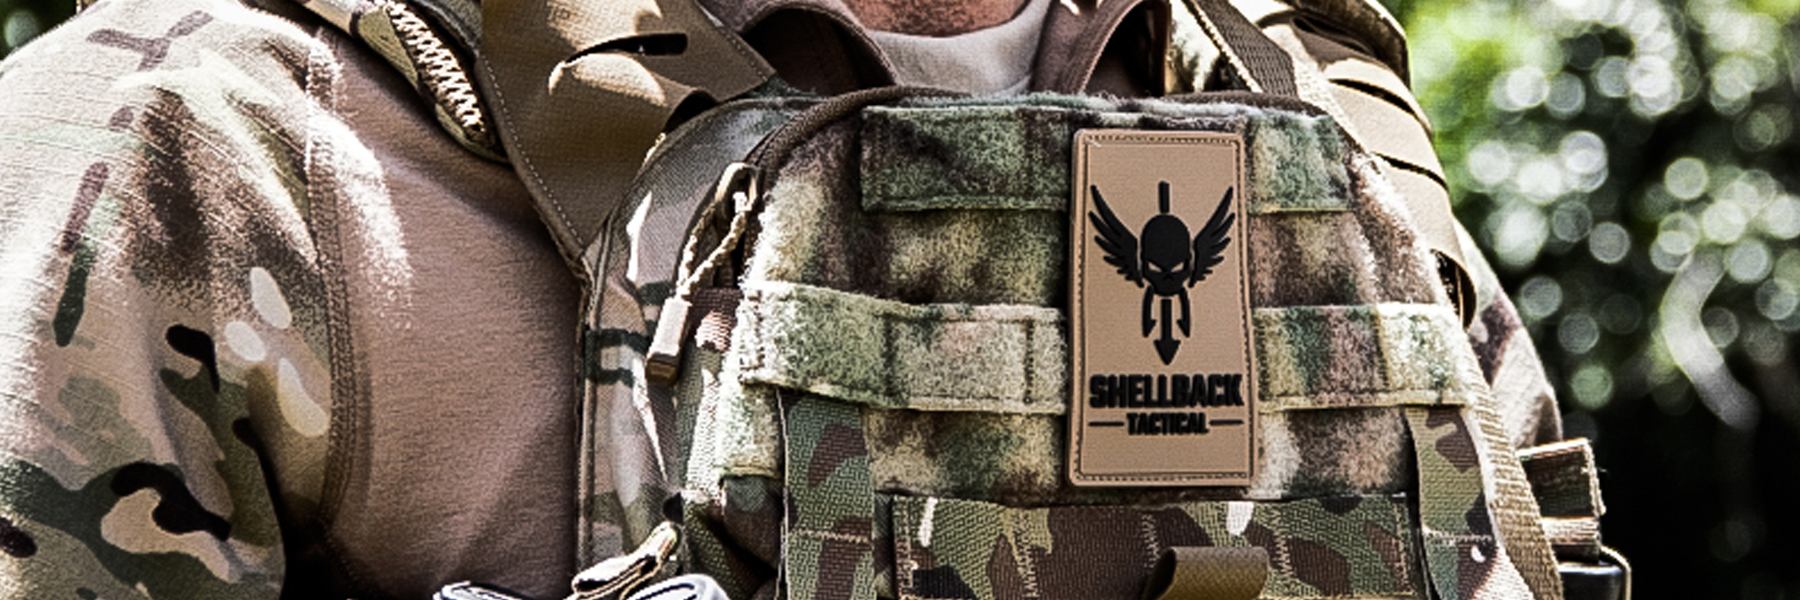 Shellback Tactical Apparel